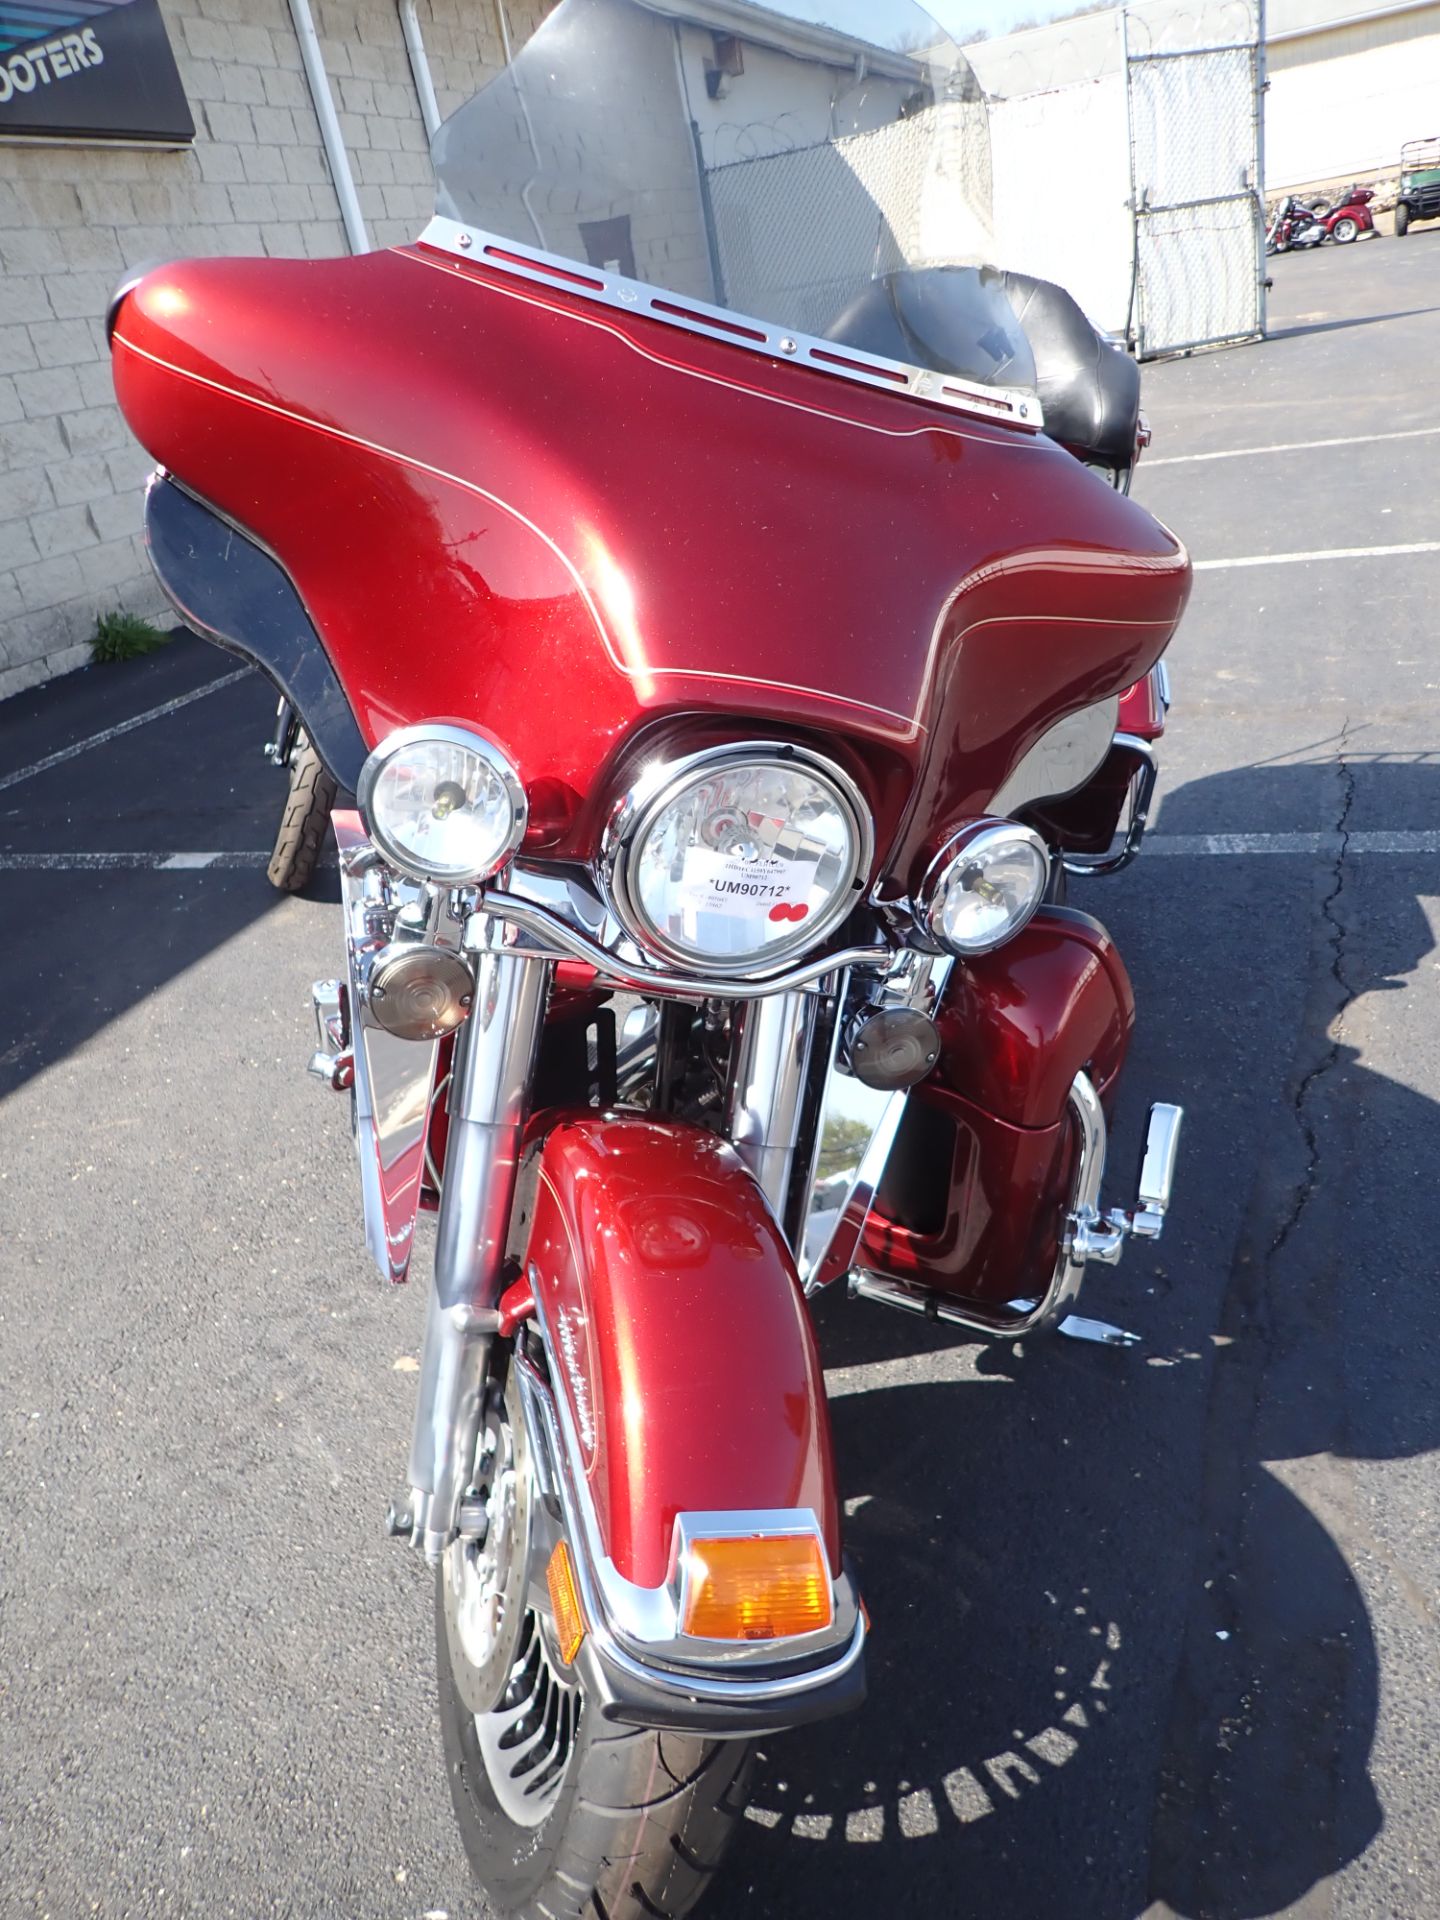 2009 Harley-Davidson Ultra Classic® Electra Glide® in Massillon, Ohio - Photo 4